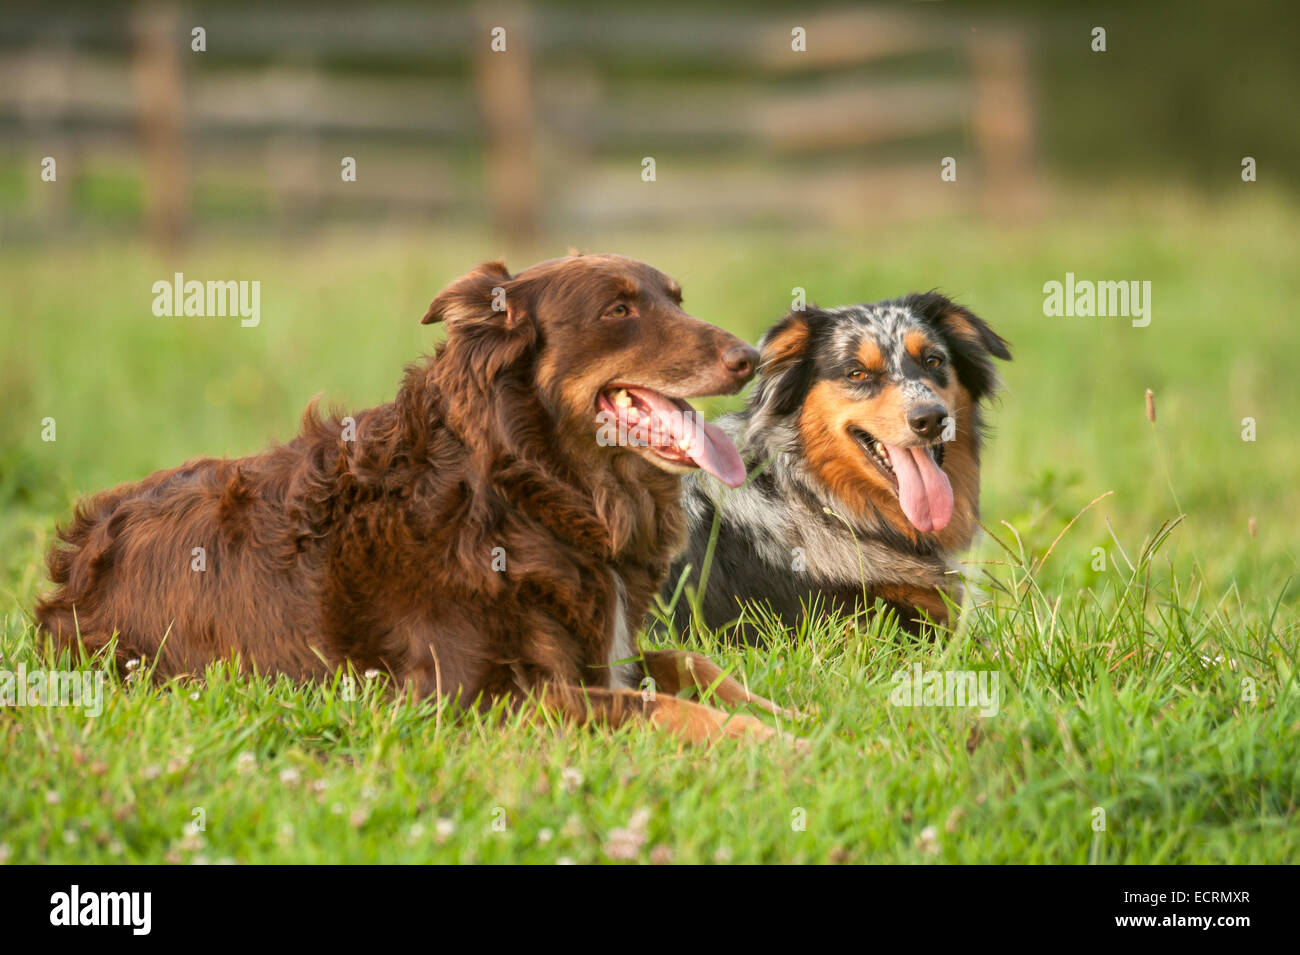 Two Austrailian Shepherd dogs lying in grass Stock Photo